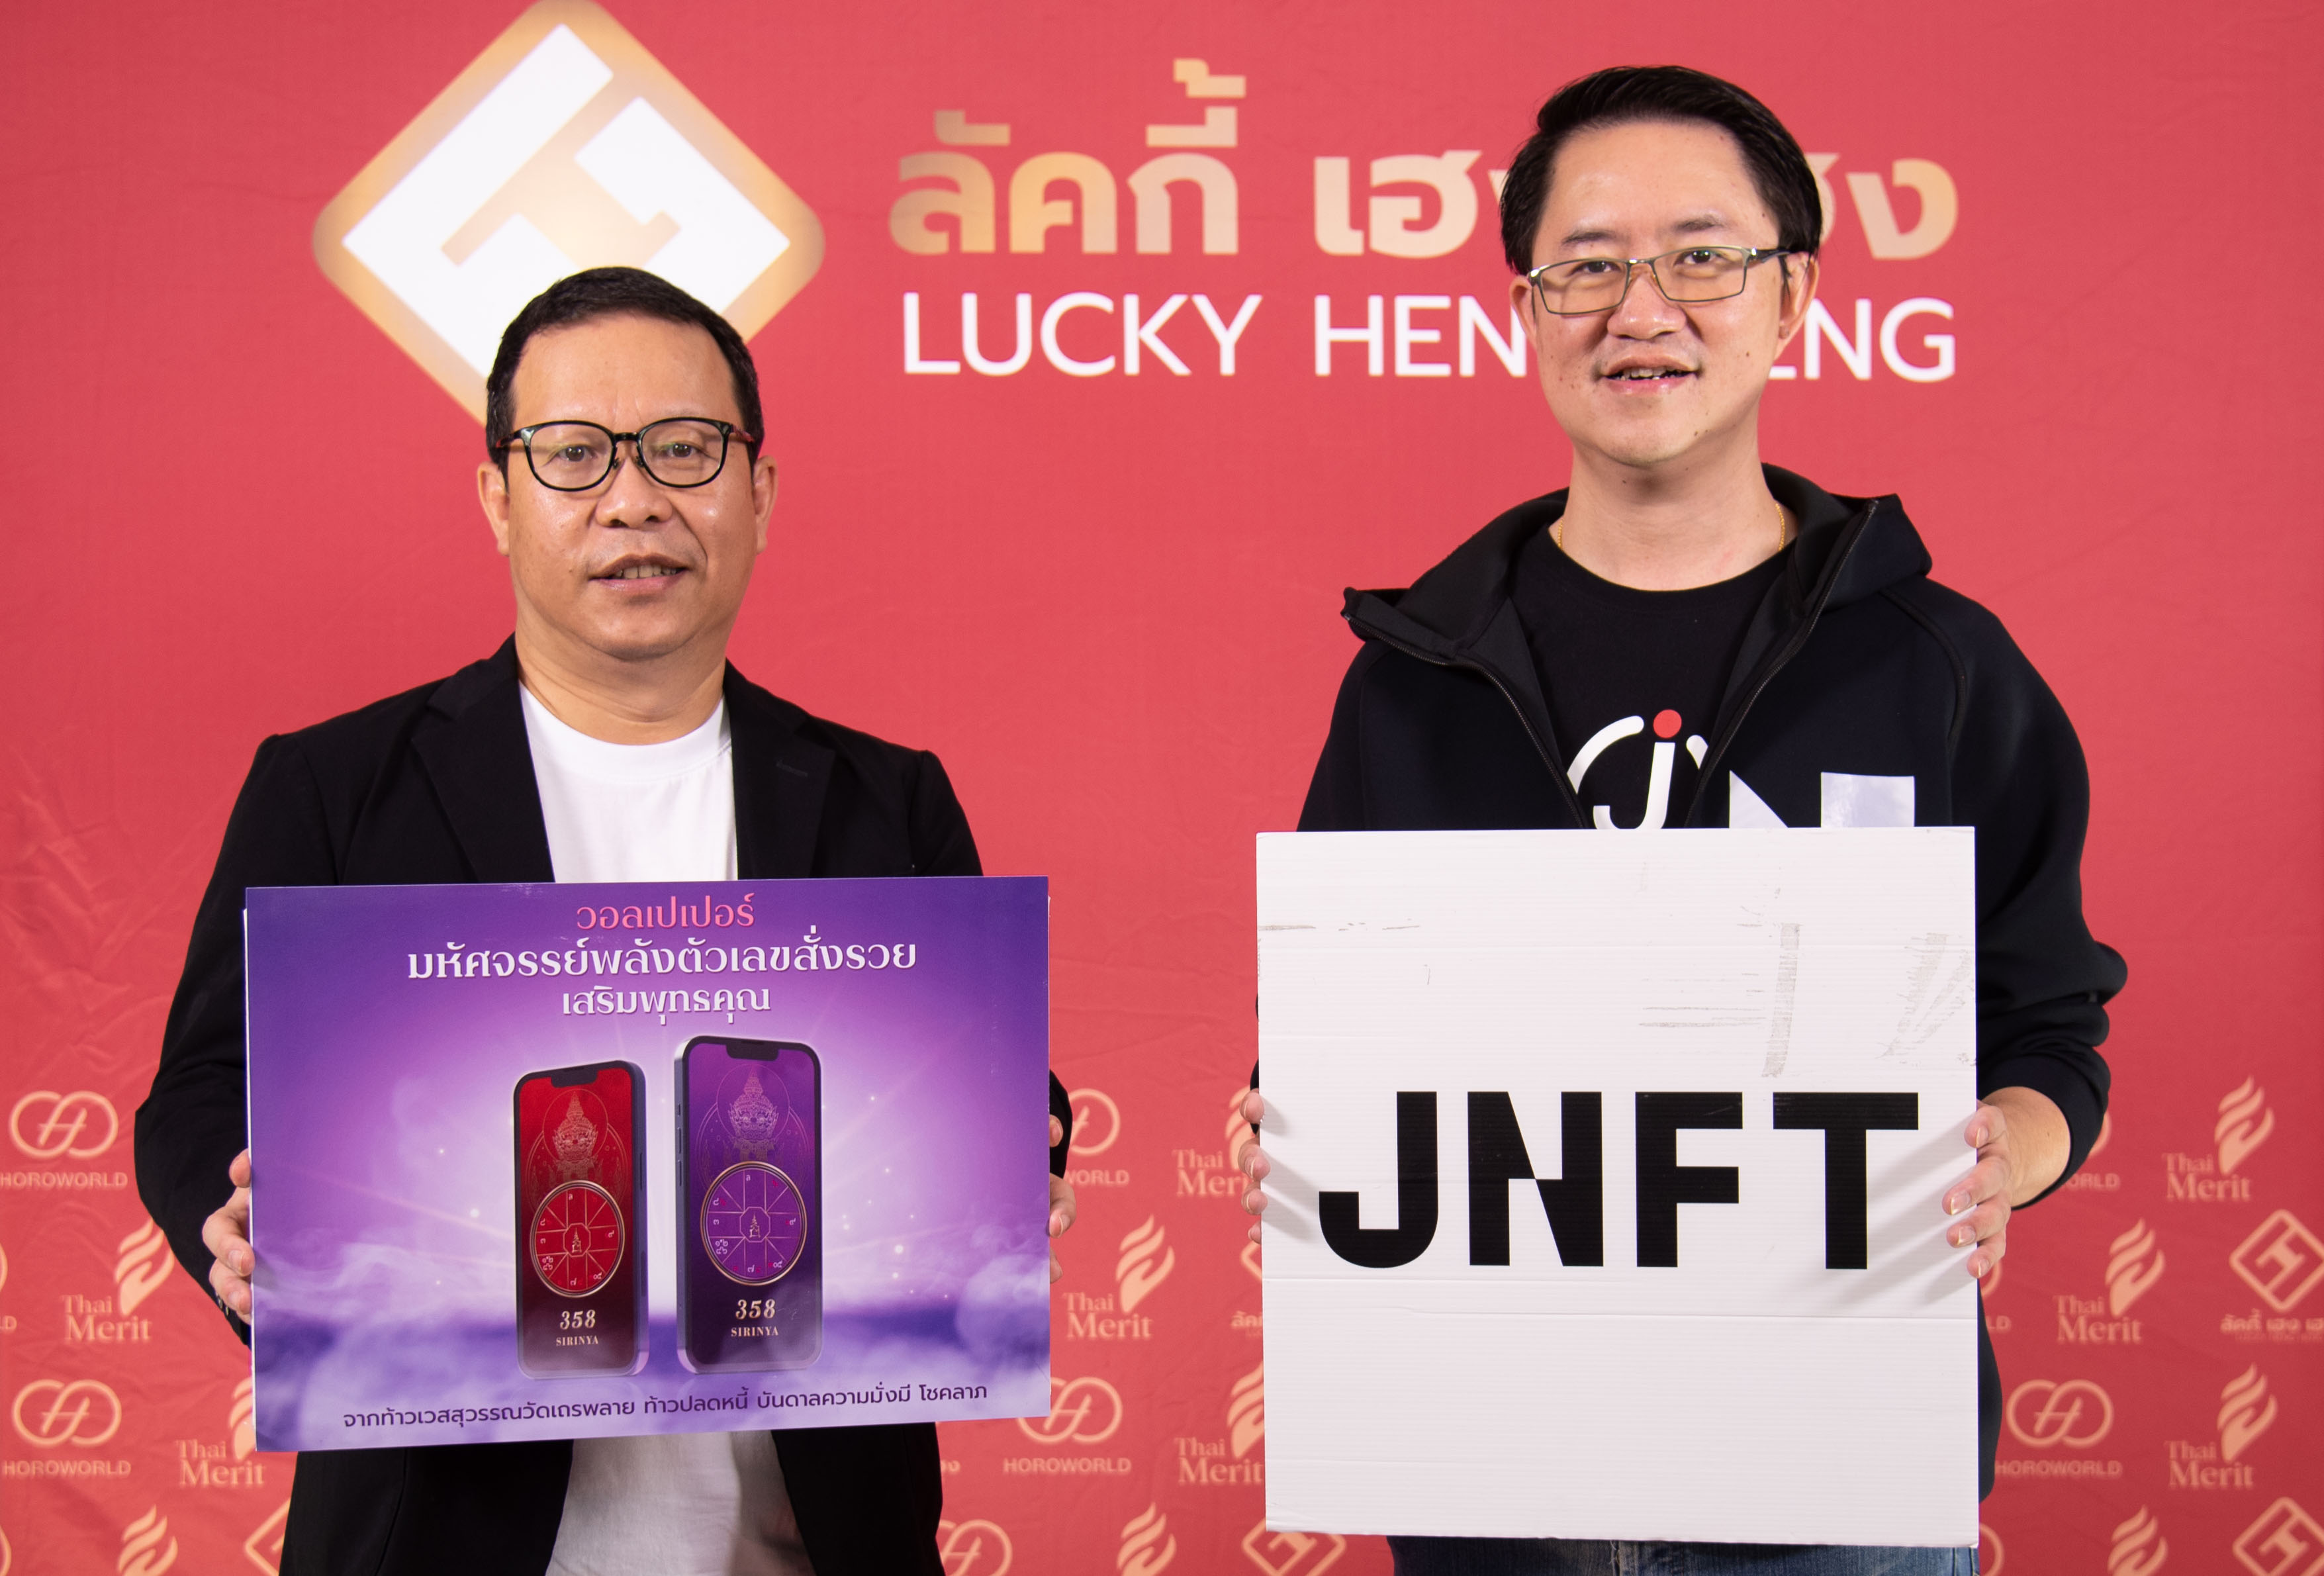 สุดปังพลังมู! ลัคกี้ เฮง เฮง จับมือ J Ventures ตะลุยมูตาเวิร์ส เปิดตัว NFT วอลเปเปอร์มงคล ที่แรกในไทย ภายใต้แบรนด์ Lucky Wall